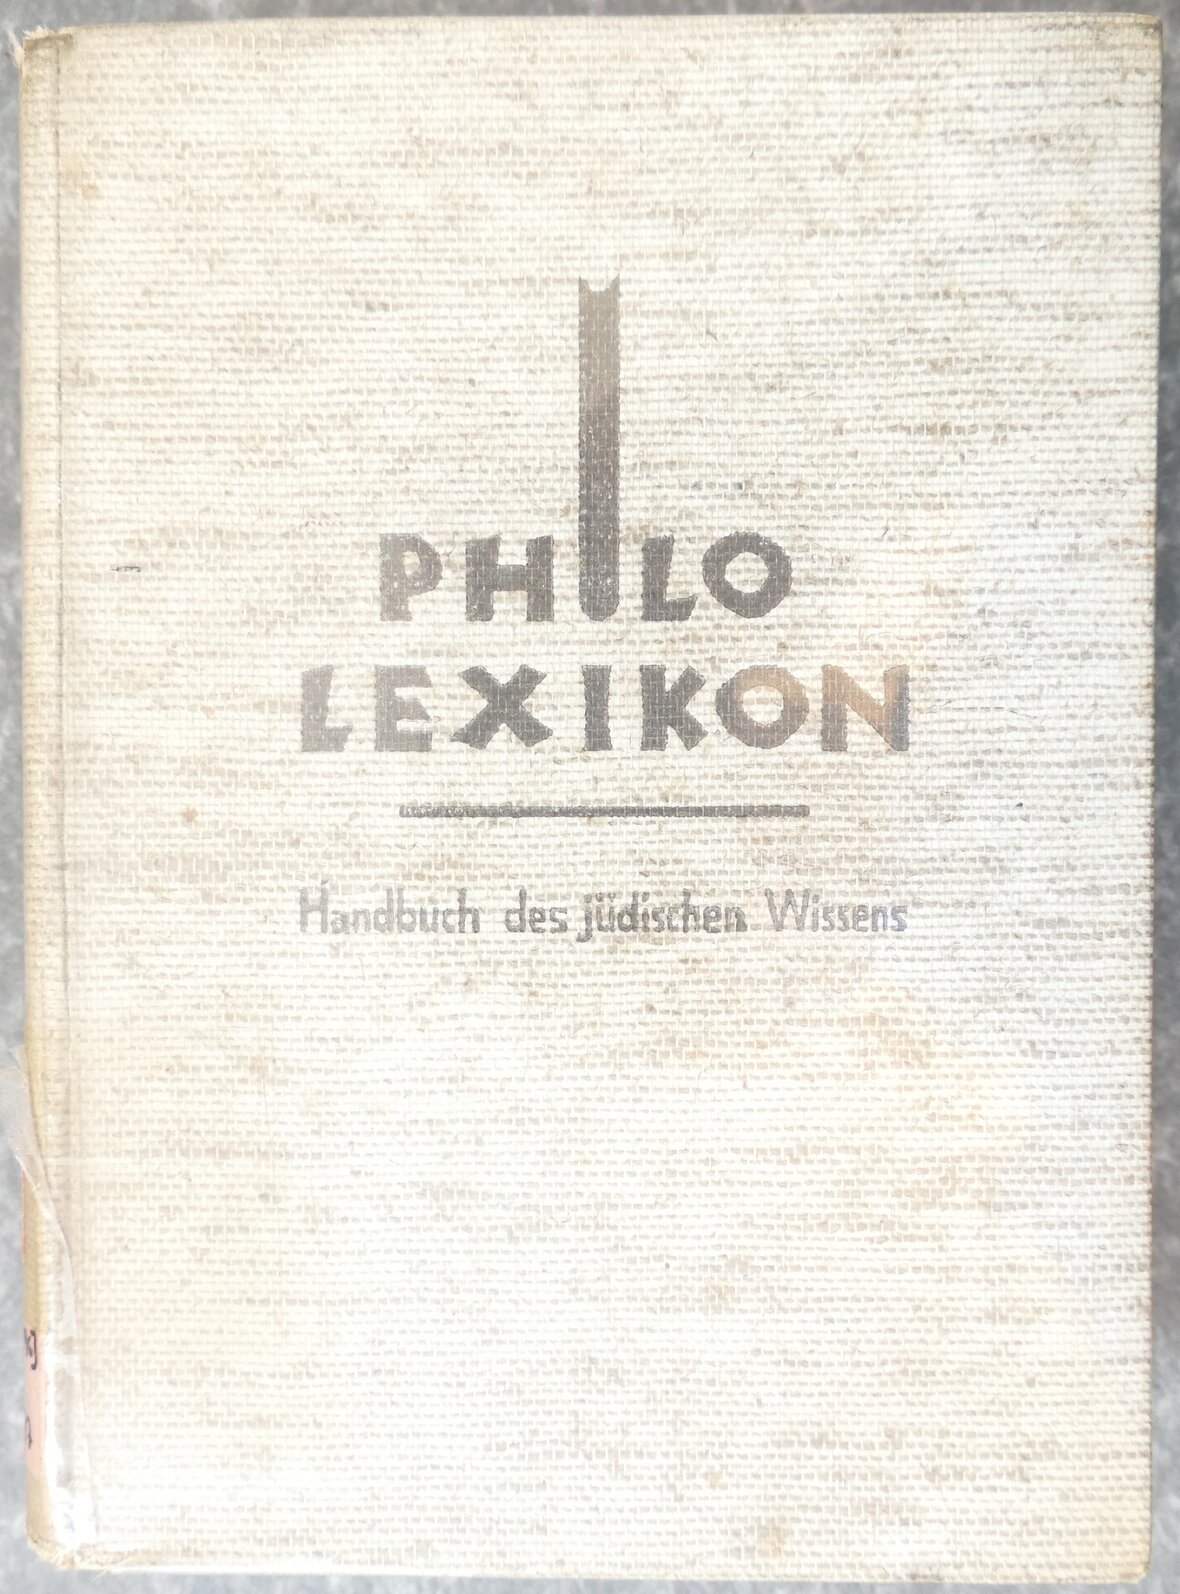 Die Titel seite eines Philo Lexikons. In schwarzer Schrift auf einem weißen Hintergrund steht geschrieben Philo Lexikon. Handbuch des jüdischen Wissens